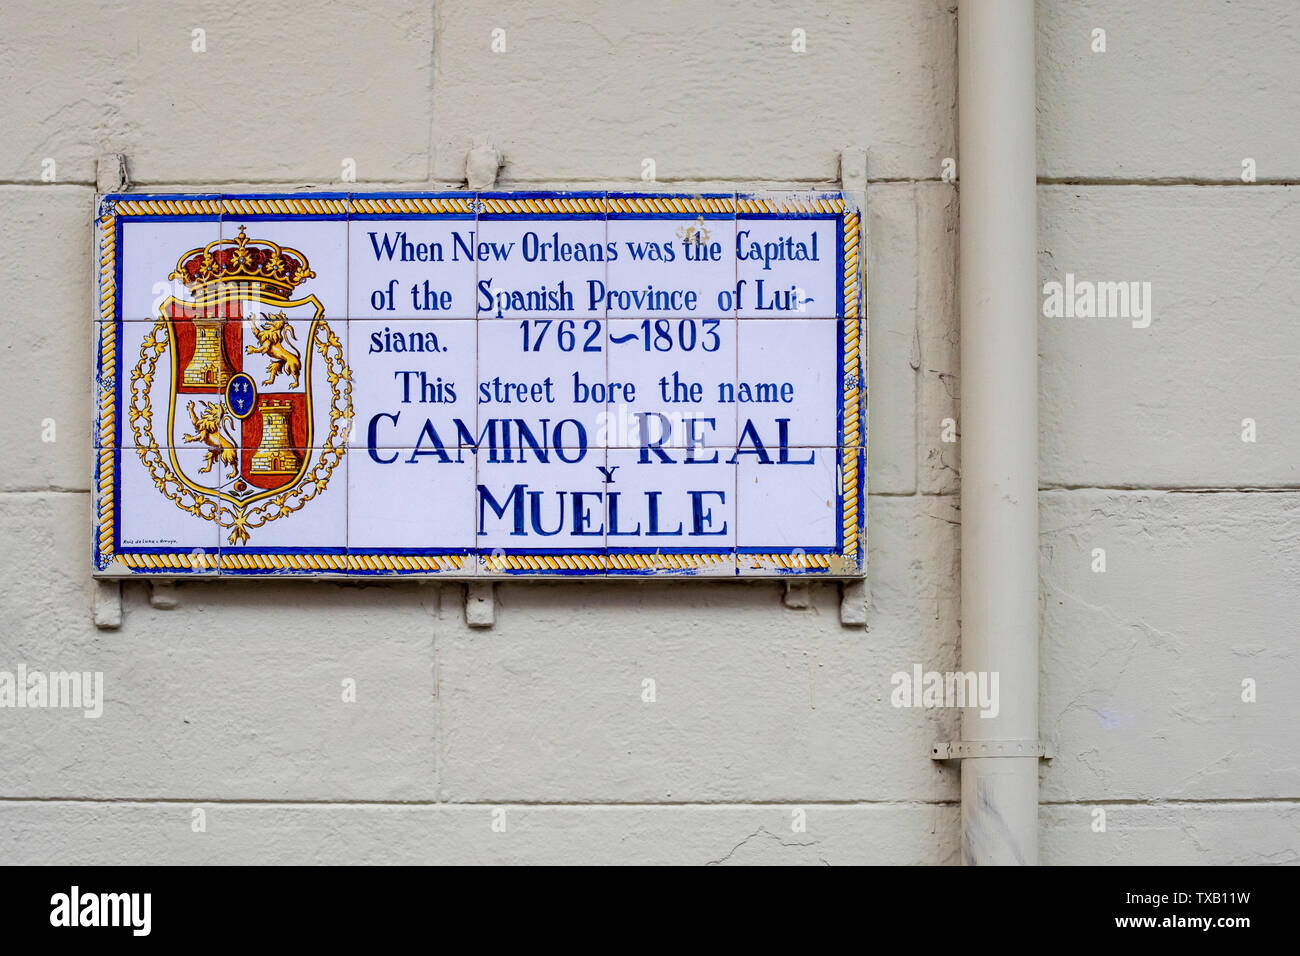 La Nouvelle-Orléans, Louisiane - une plaque dans le quartier français indique le nom d'une rue quand l'espagnol a jugé la Louisiane : Camino Real y Muelle, ou Royal Ro Banque D'Images